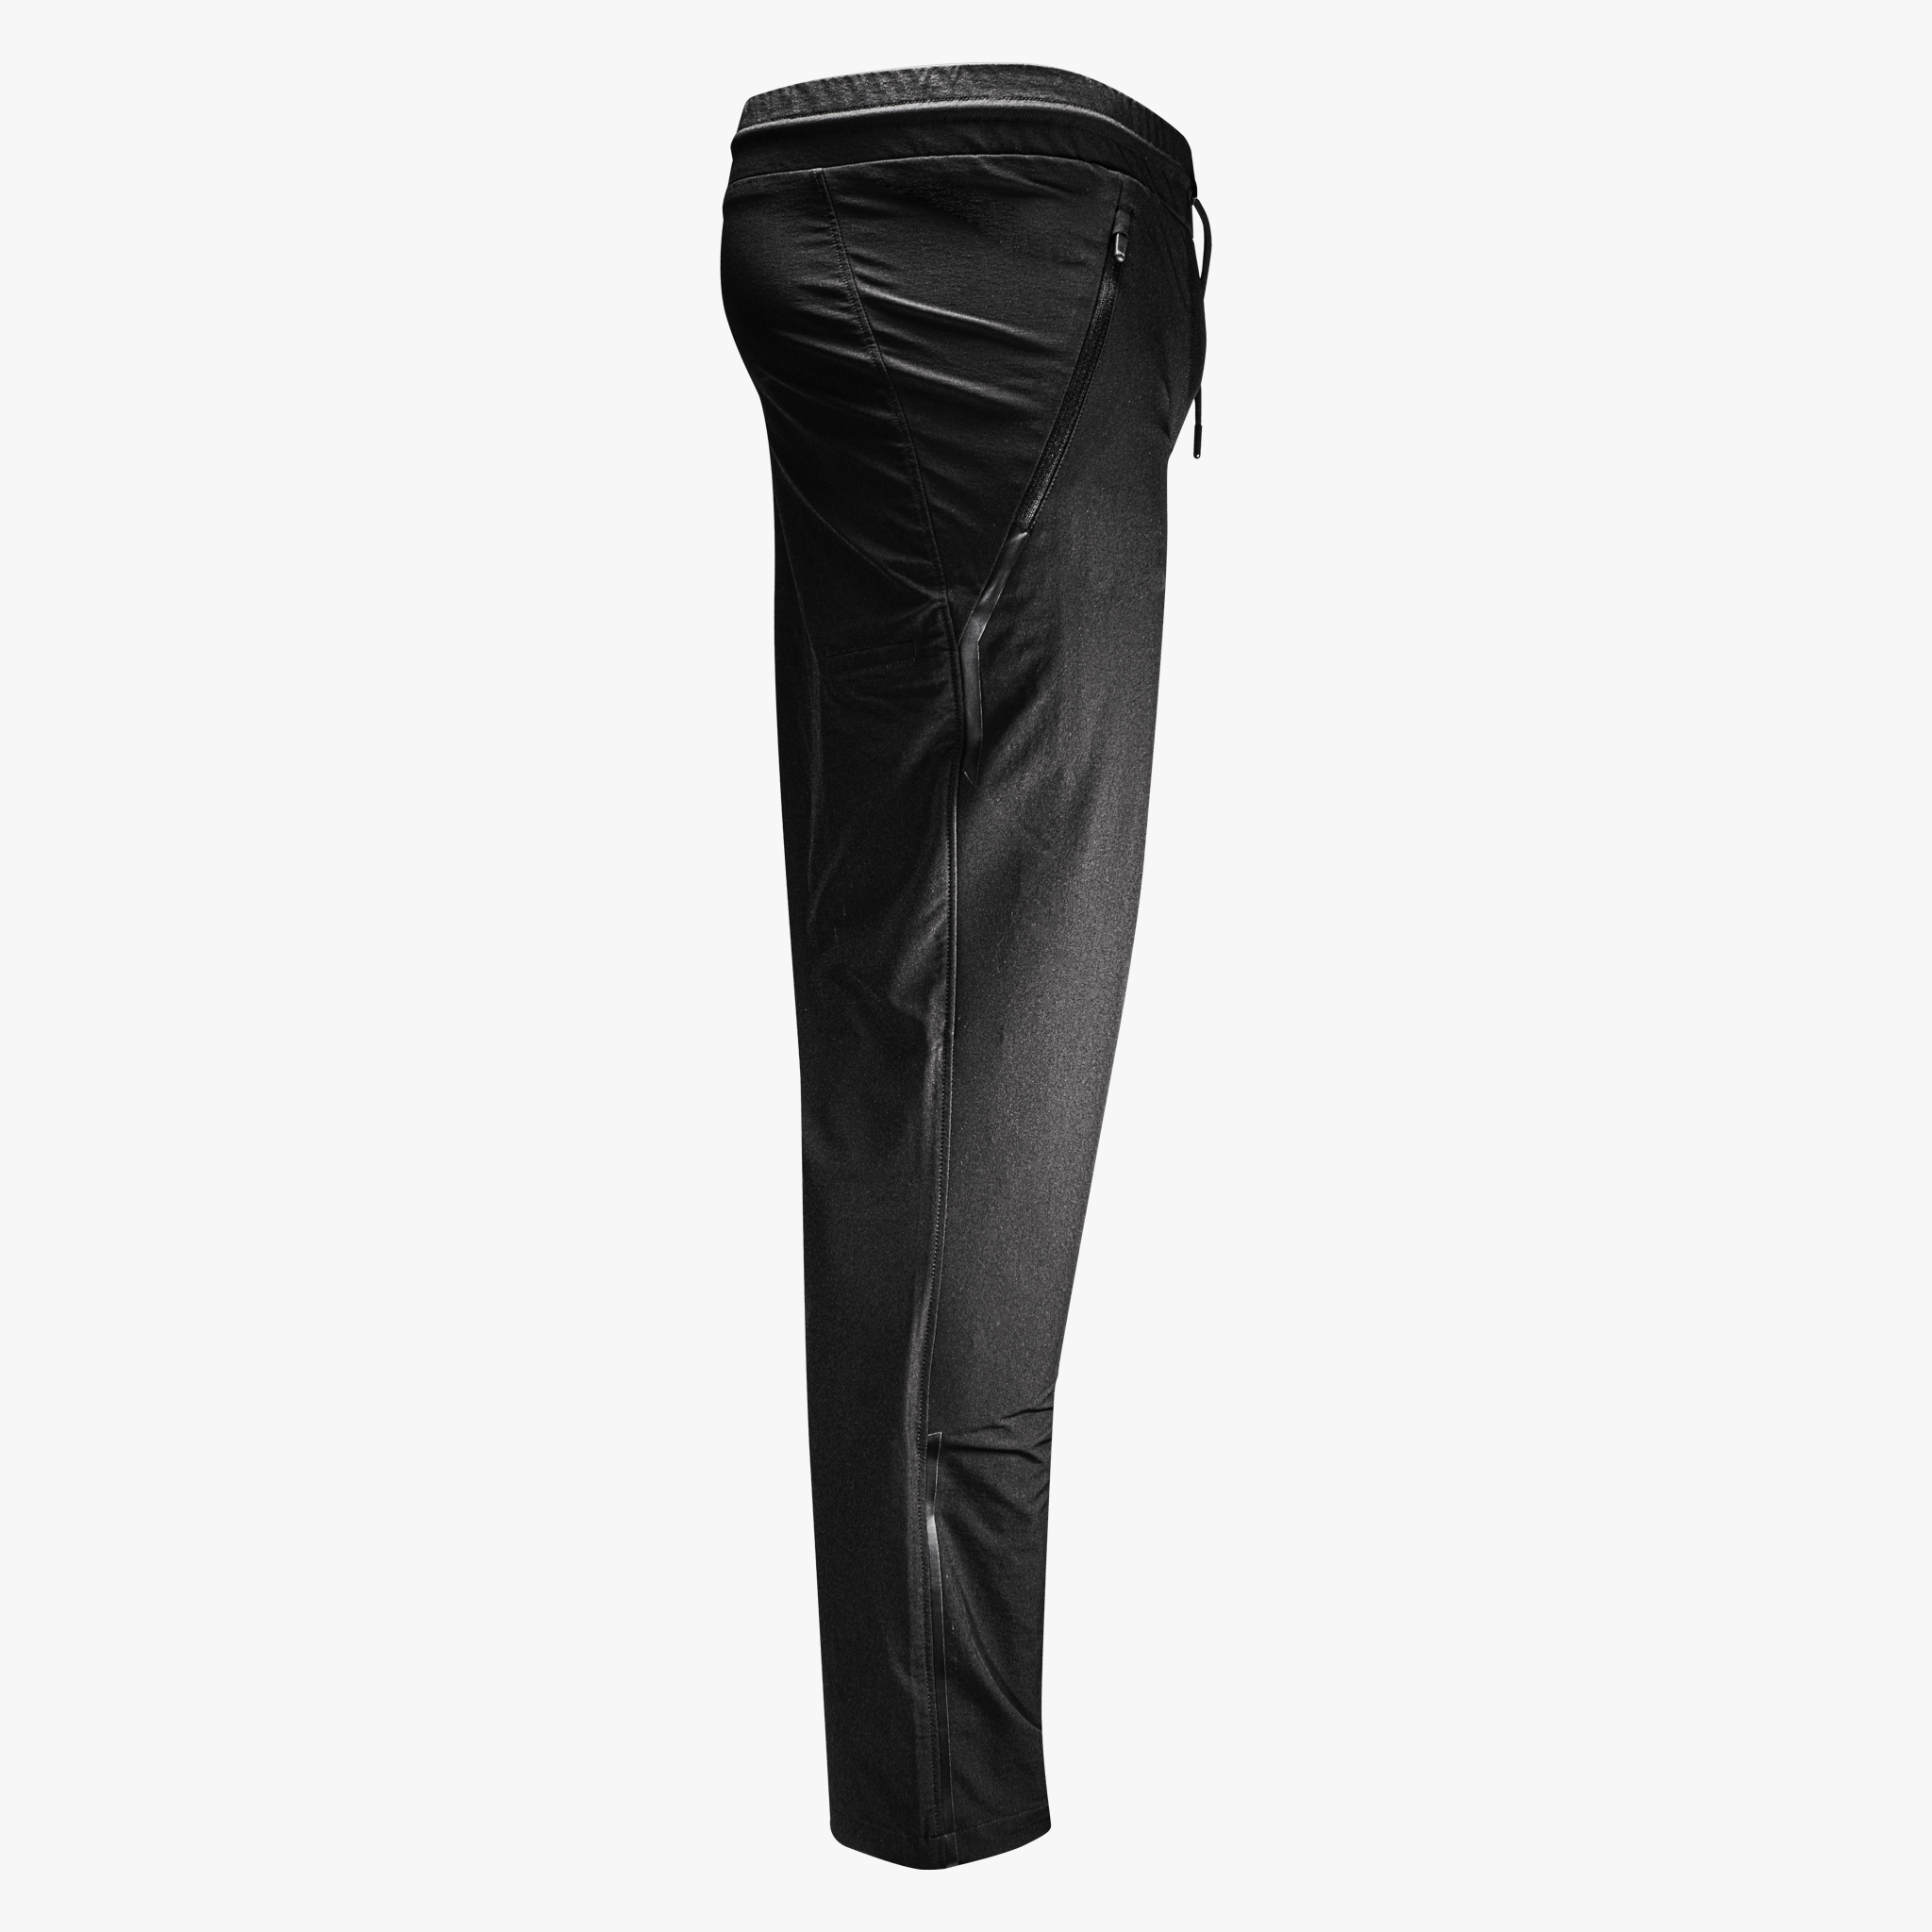 Carbon CC Paintball Pants - Black - 3XL